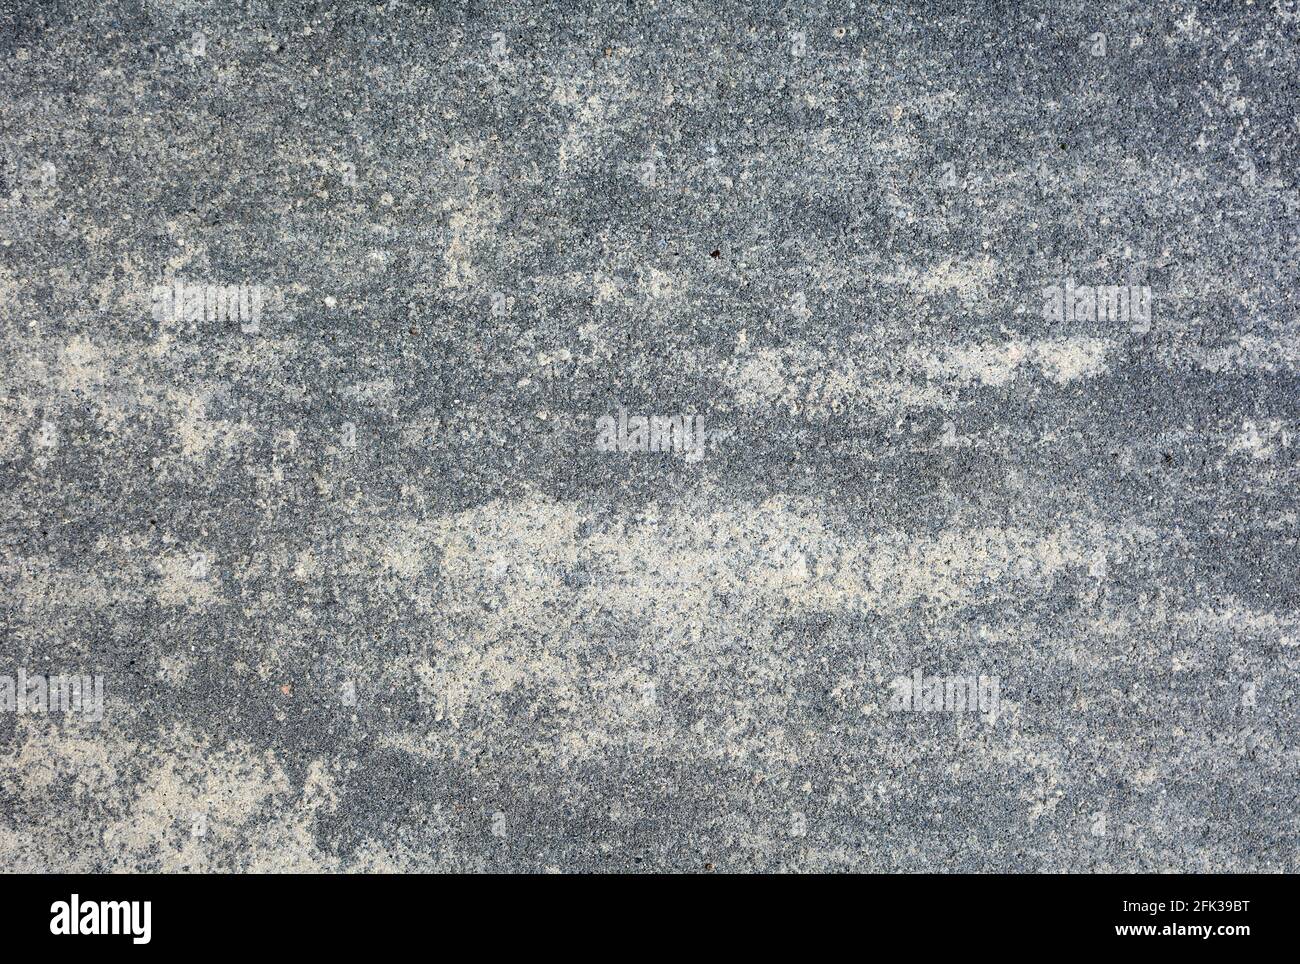 Full frame background of gray concrete tile. Surface with texture of gray concrete tile. Stock Photo